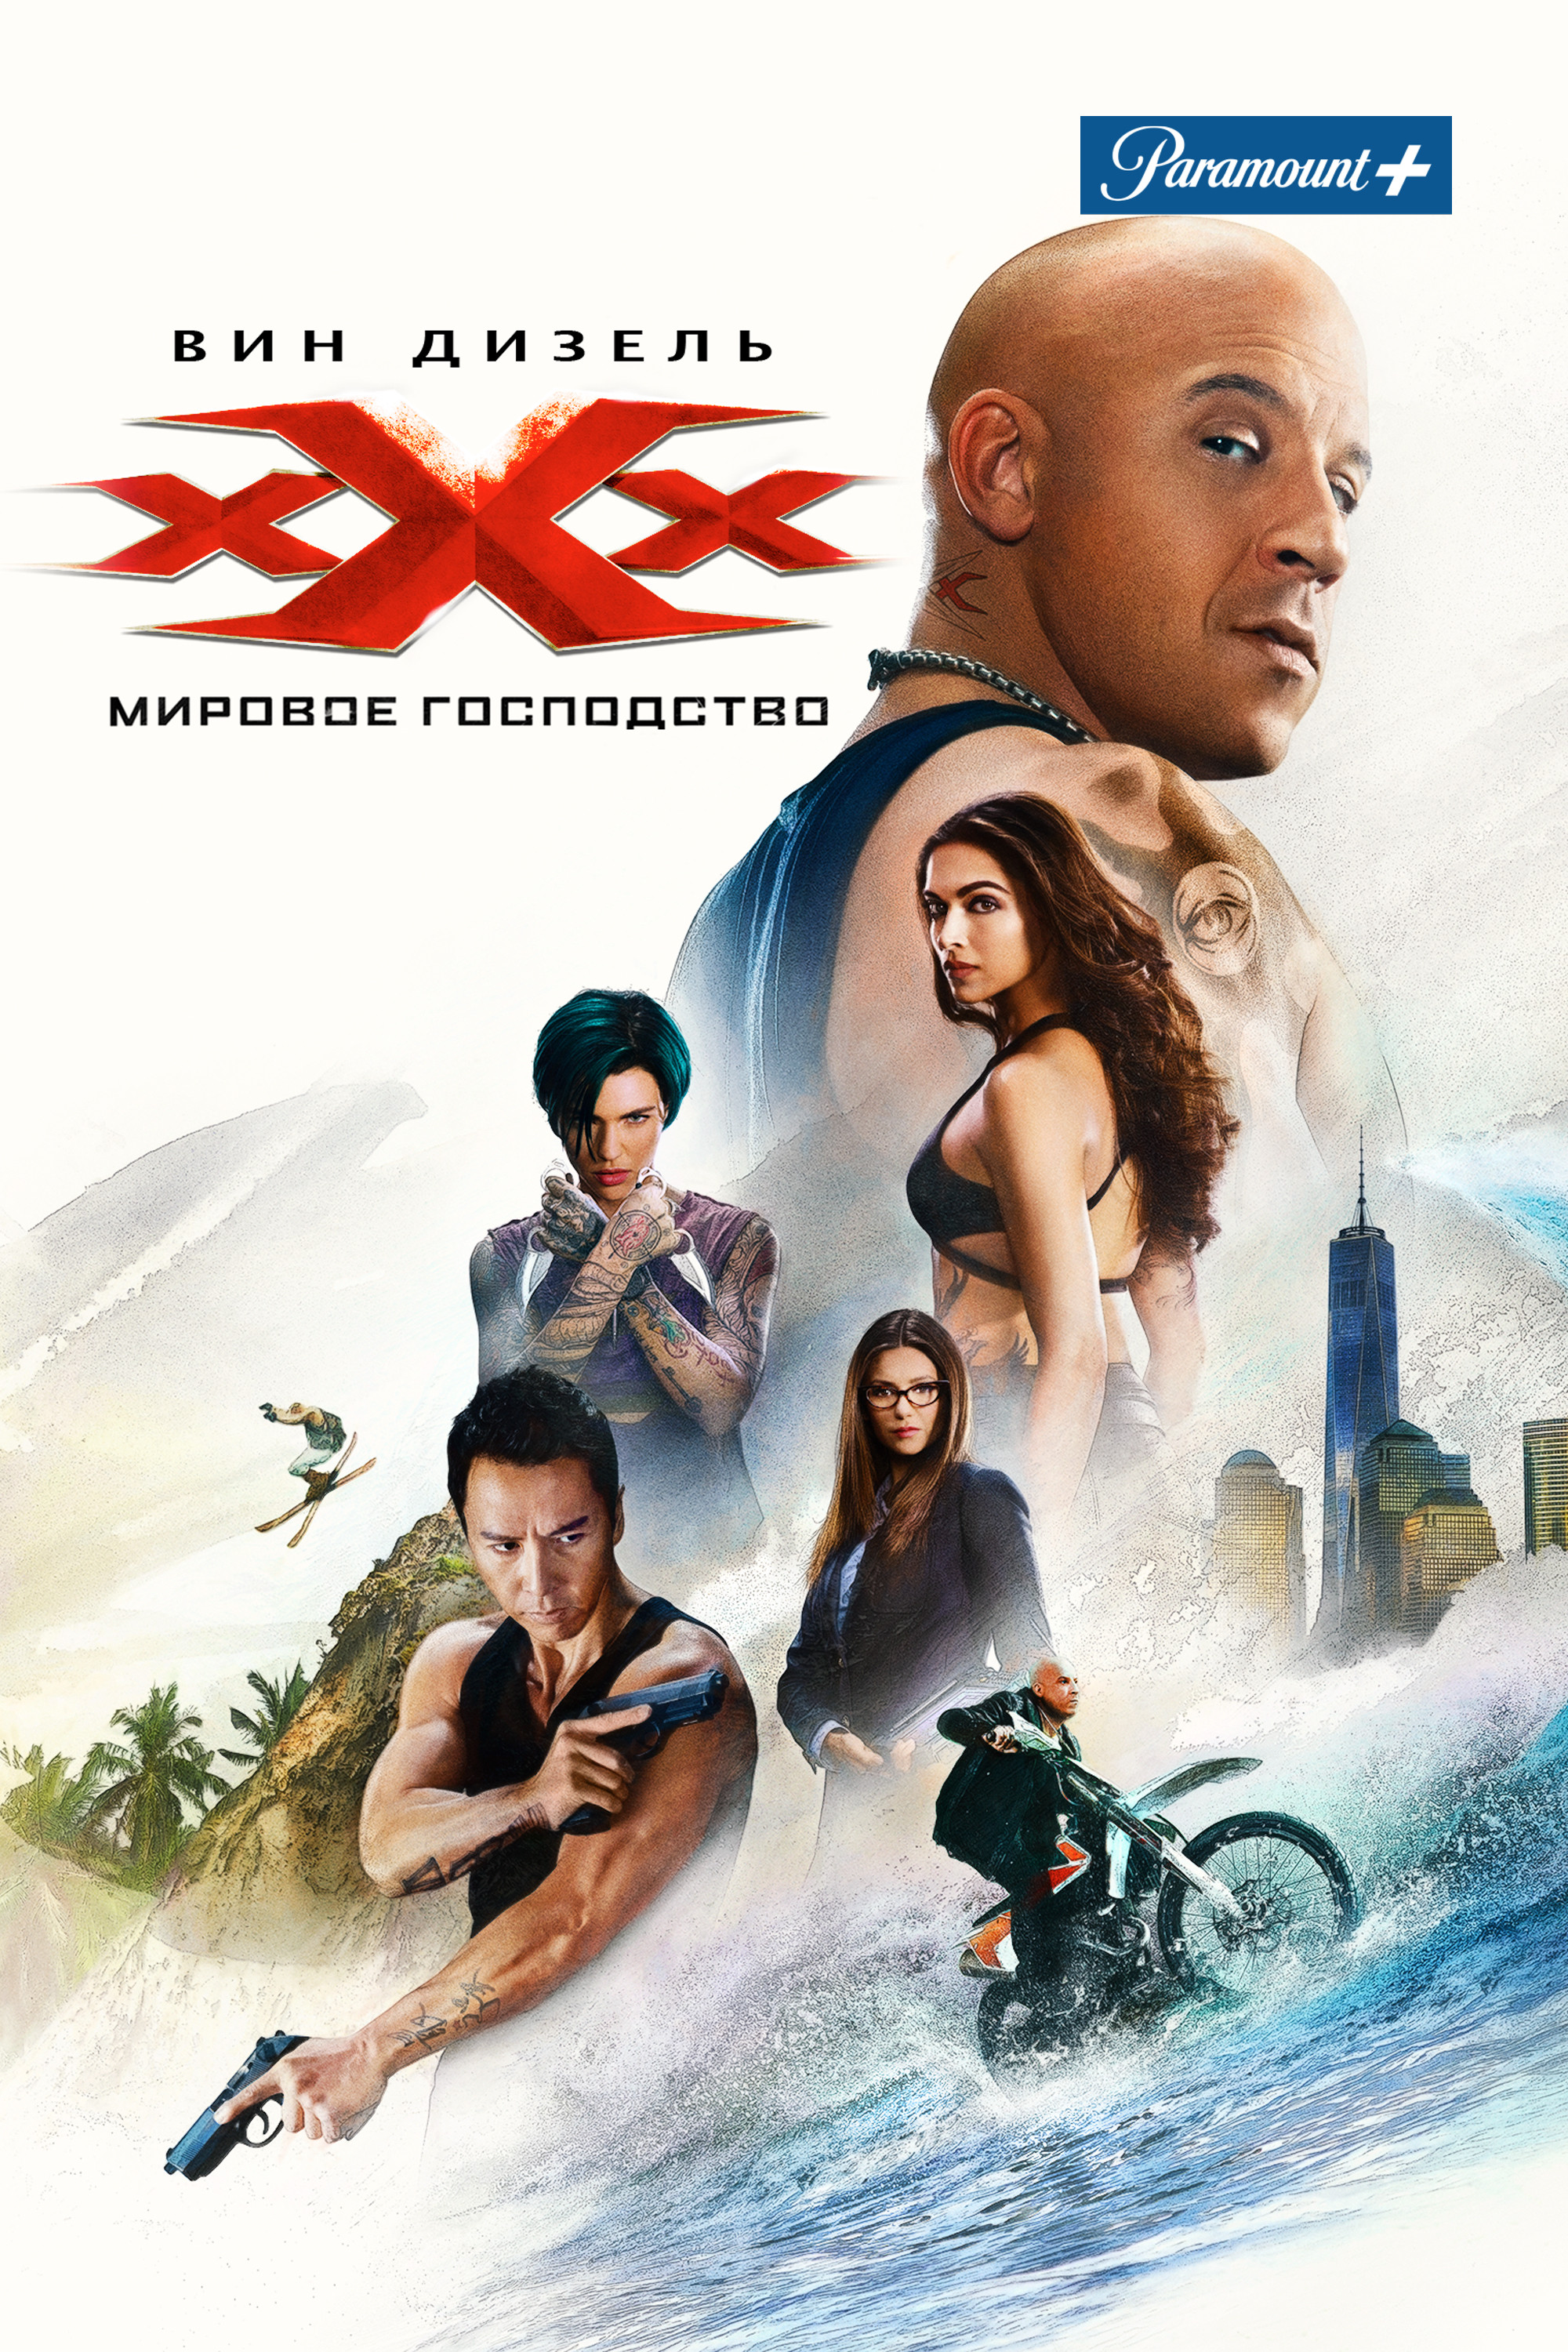 Смотреть онлайн фильмы и сериалы бесплатно в хорошем качестве HD KinoFlux